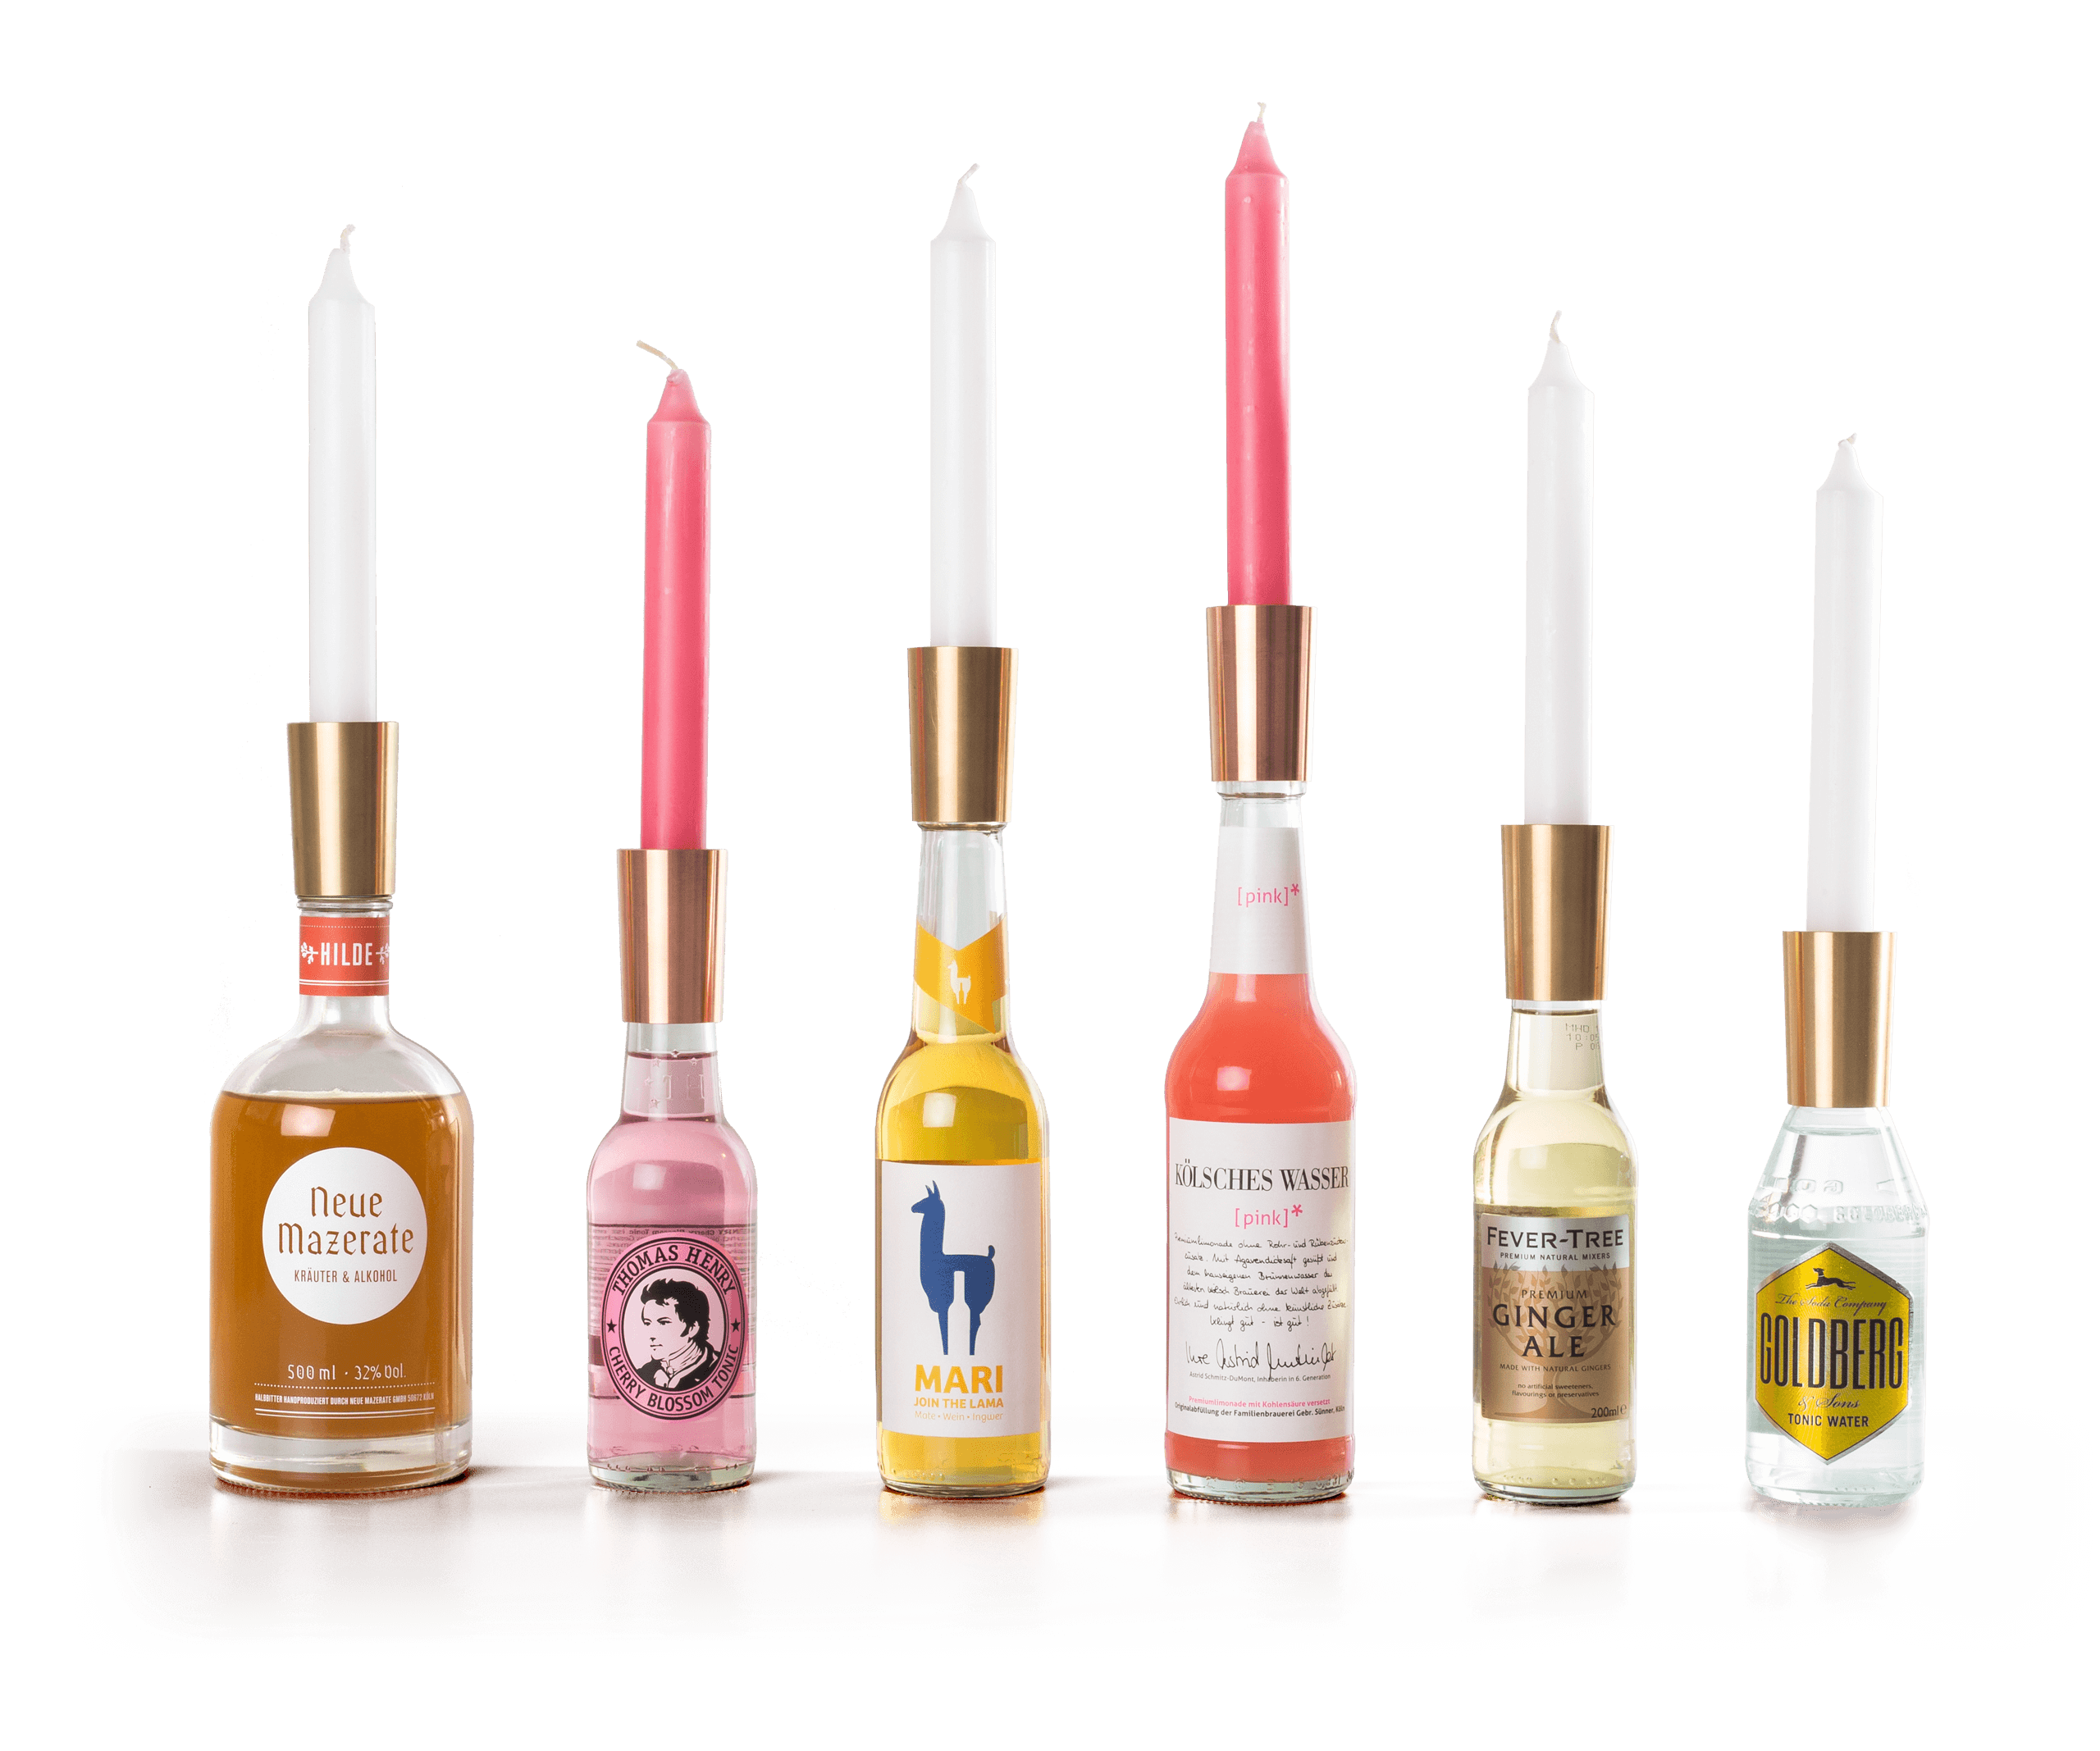 Eine Auswahl von Flaschen, die mit SODA zum Kerzenhalter werden: Neue Mazerate, Thomas Henry, Mari, Kölsches Wasser, Fever Tree, Goldberg